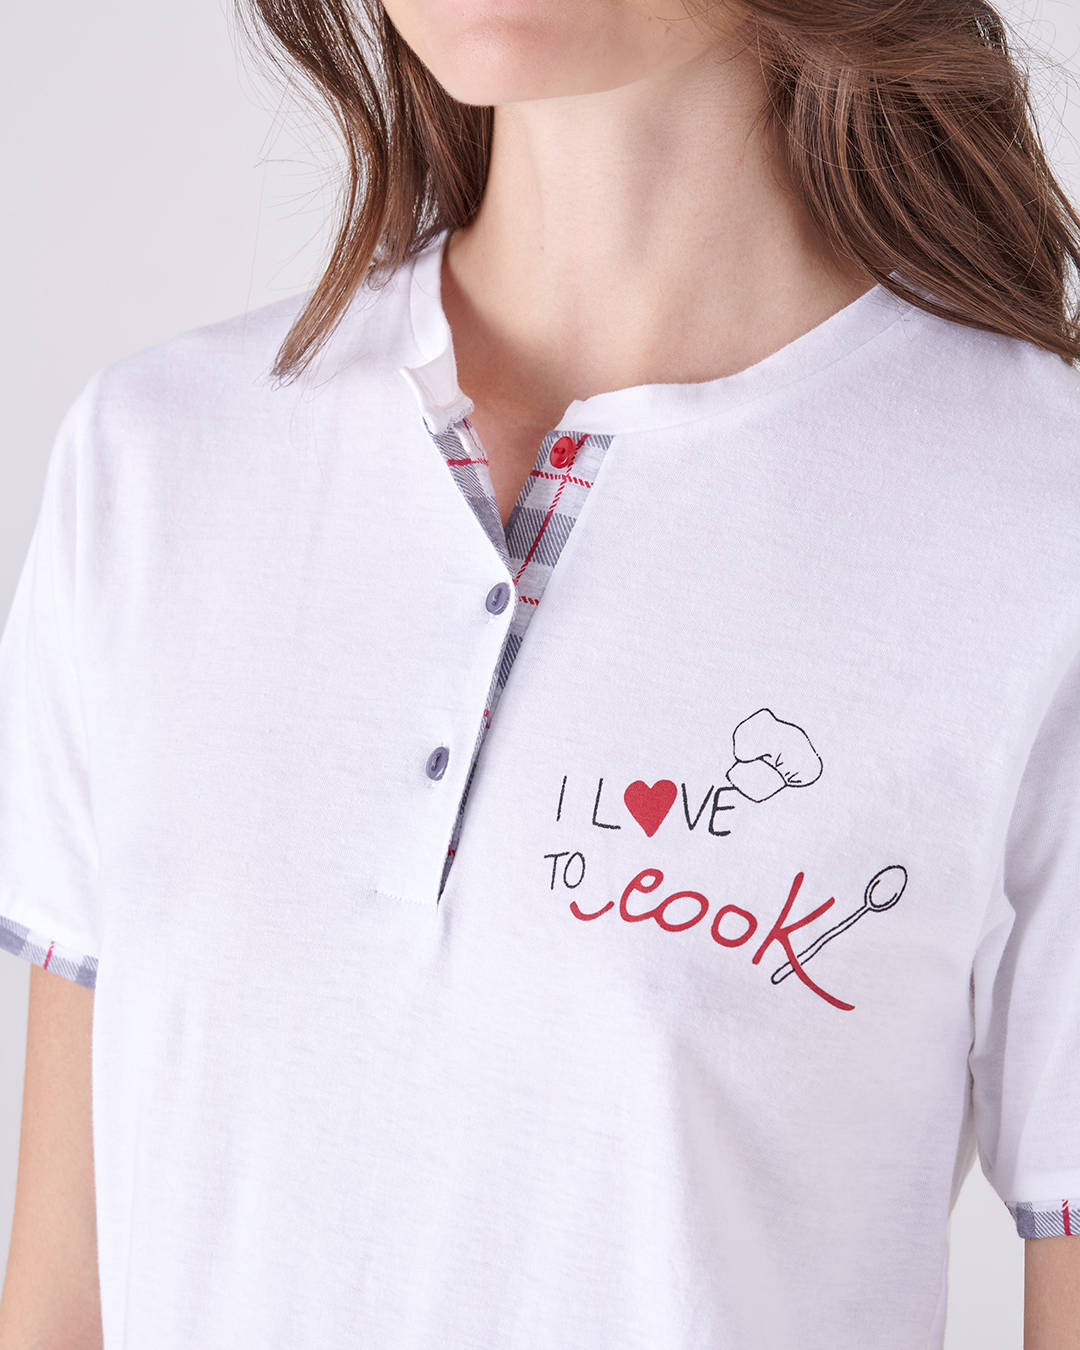 Dettaglio della scritta sulla maglia del pigiama a maniche e gamba corta da donna "Cook"